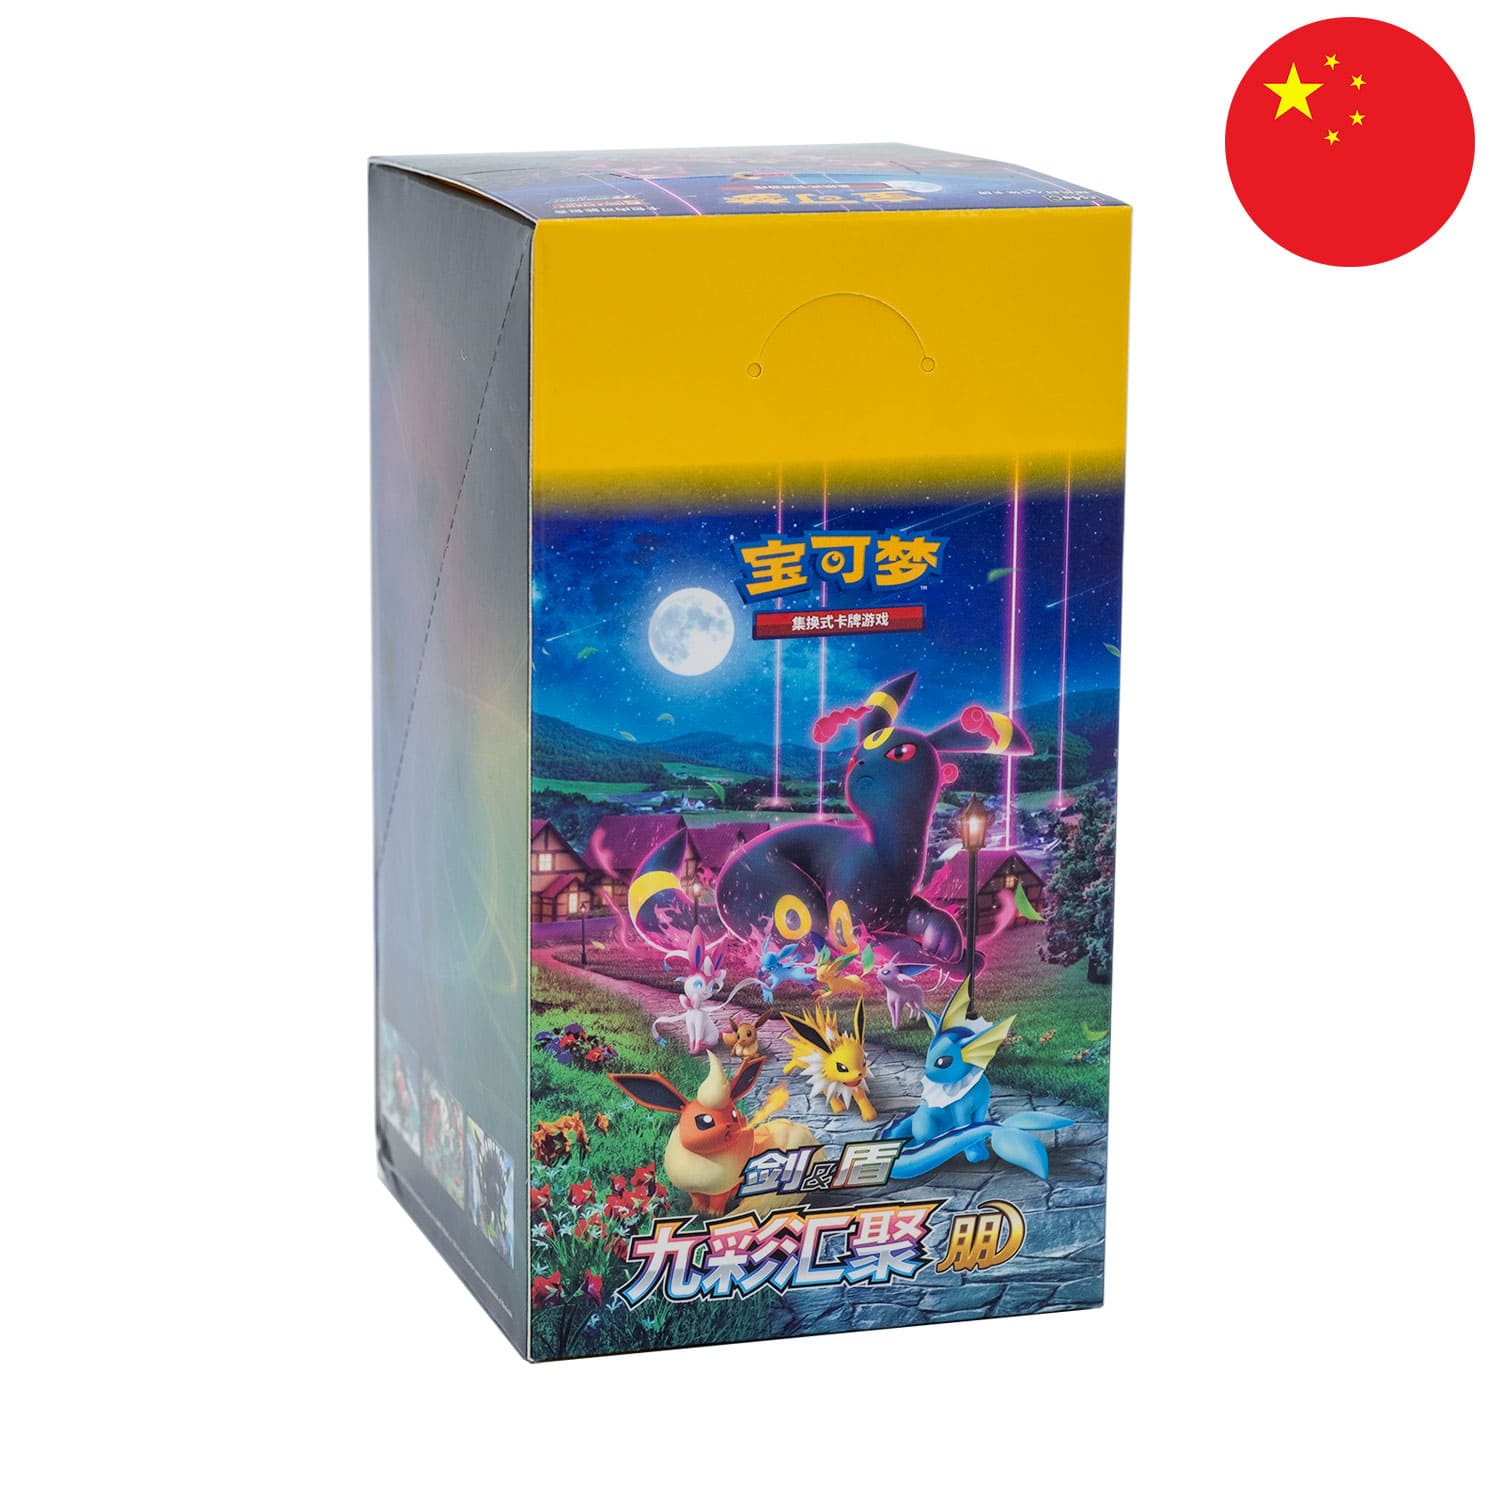 Das Pokemon Display Nine Colors Gathering: Friend, frontal&schräg als Hauptbild, mit der Flagge Chinas in der Ecke.